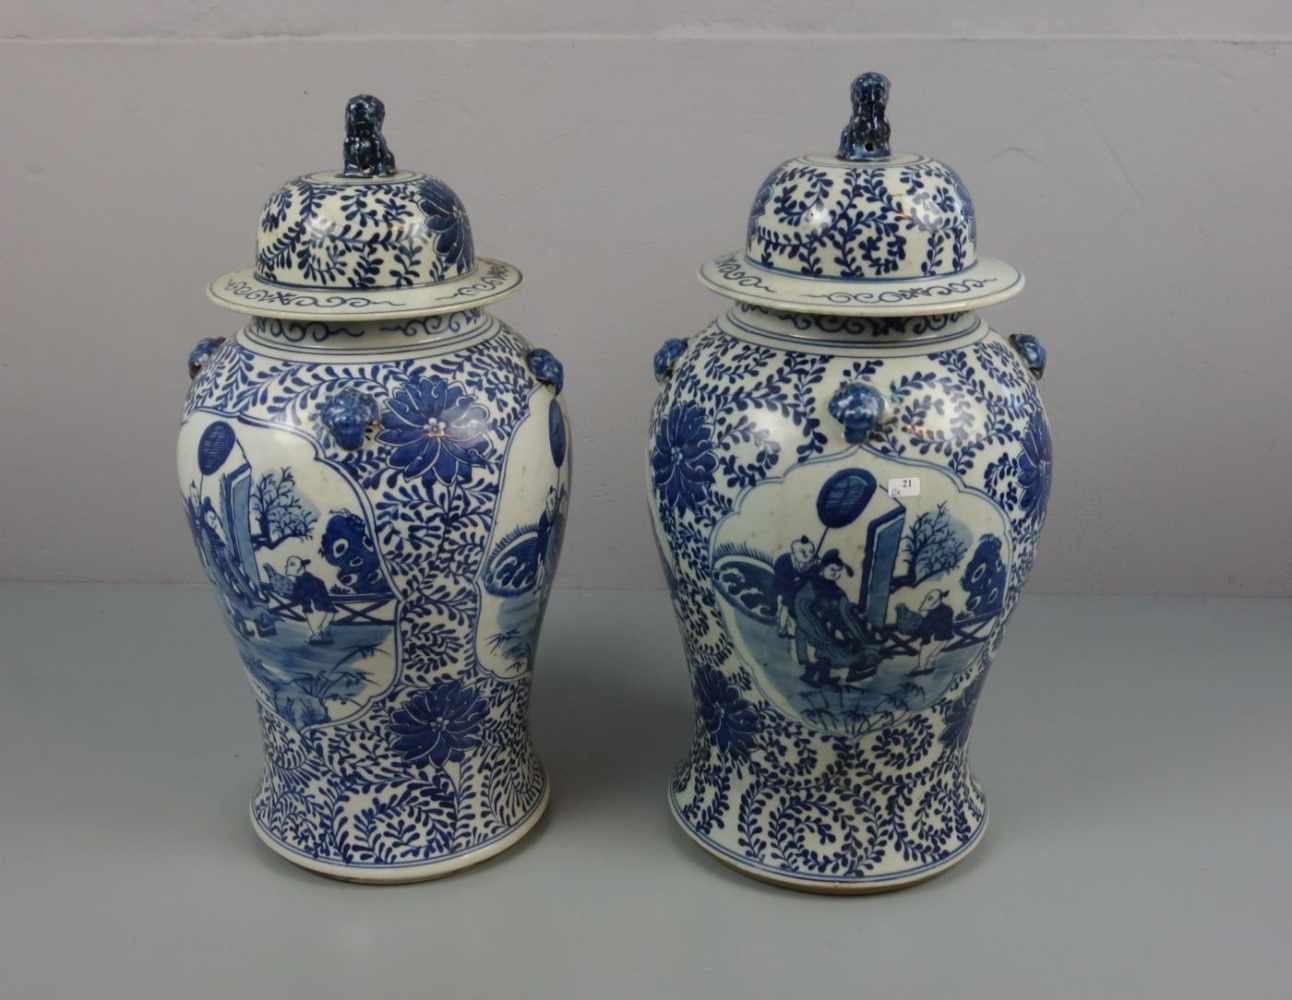 PAAR CHINESISCHE DECKELVASEN / pair of chinese vases, late Qing dynasty, Porzellan (ungemarkt),